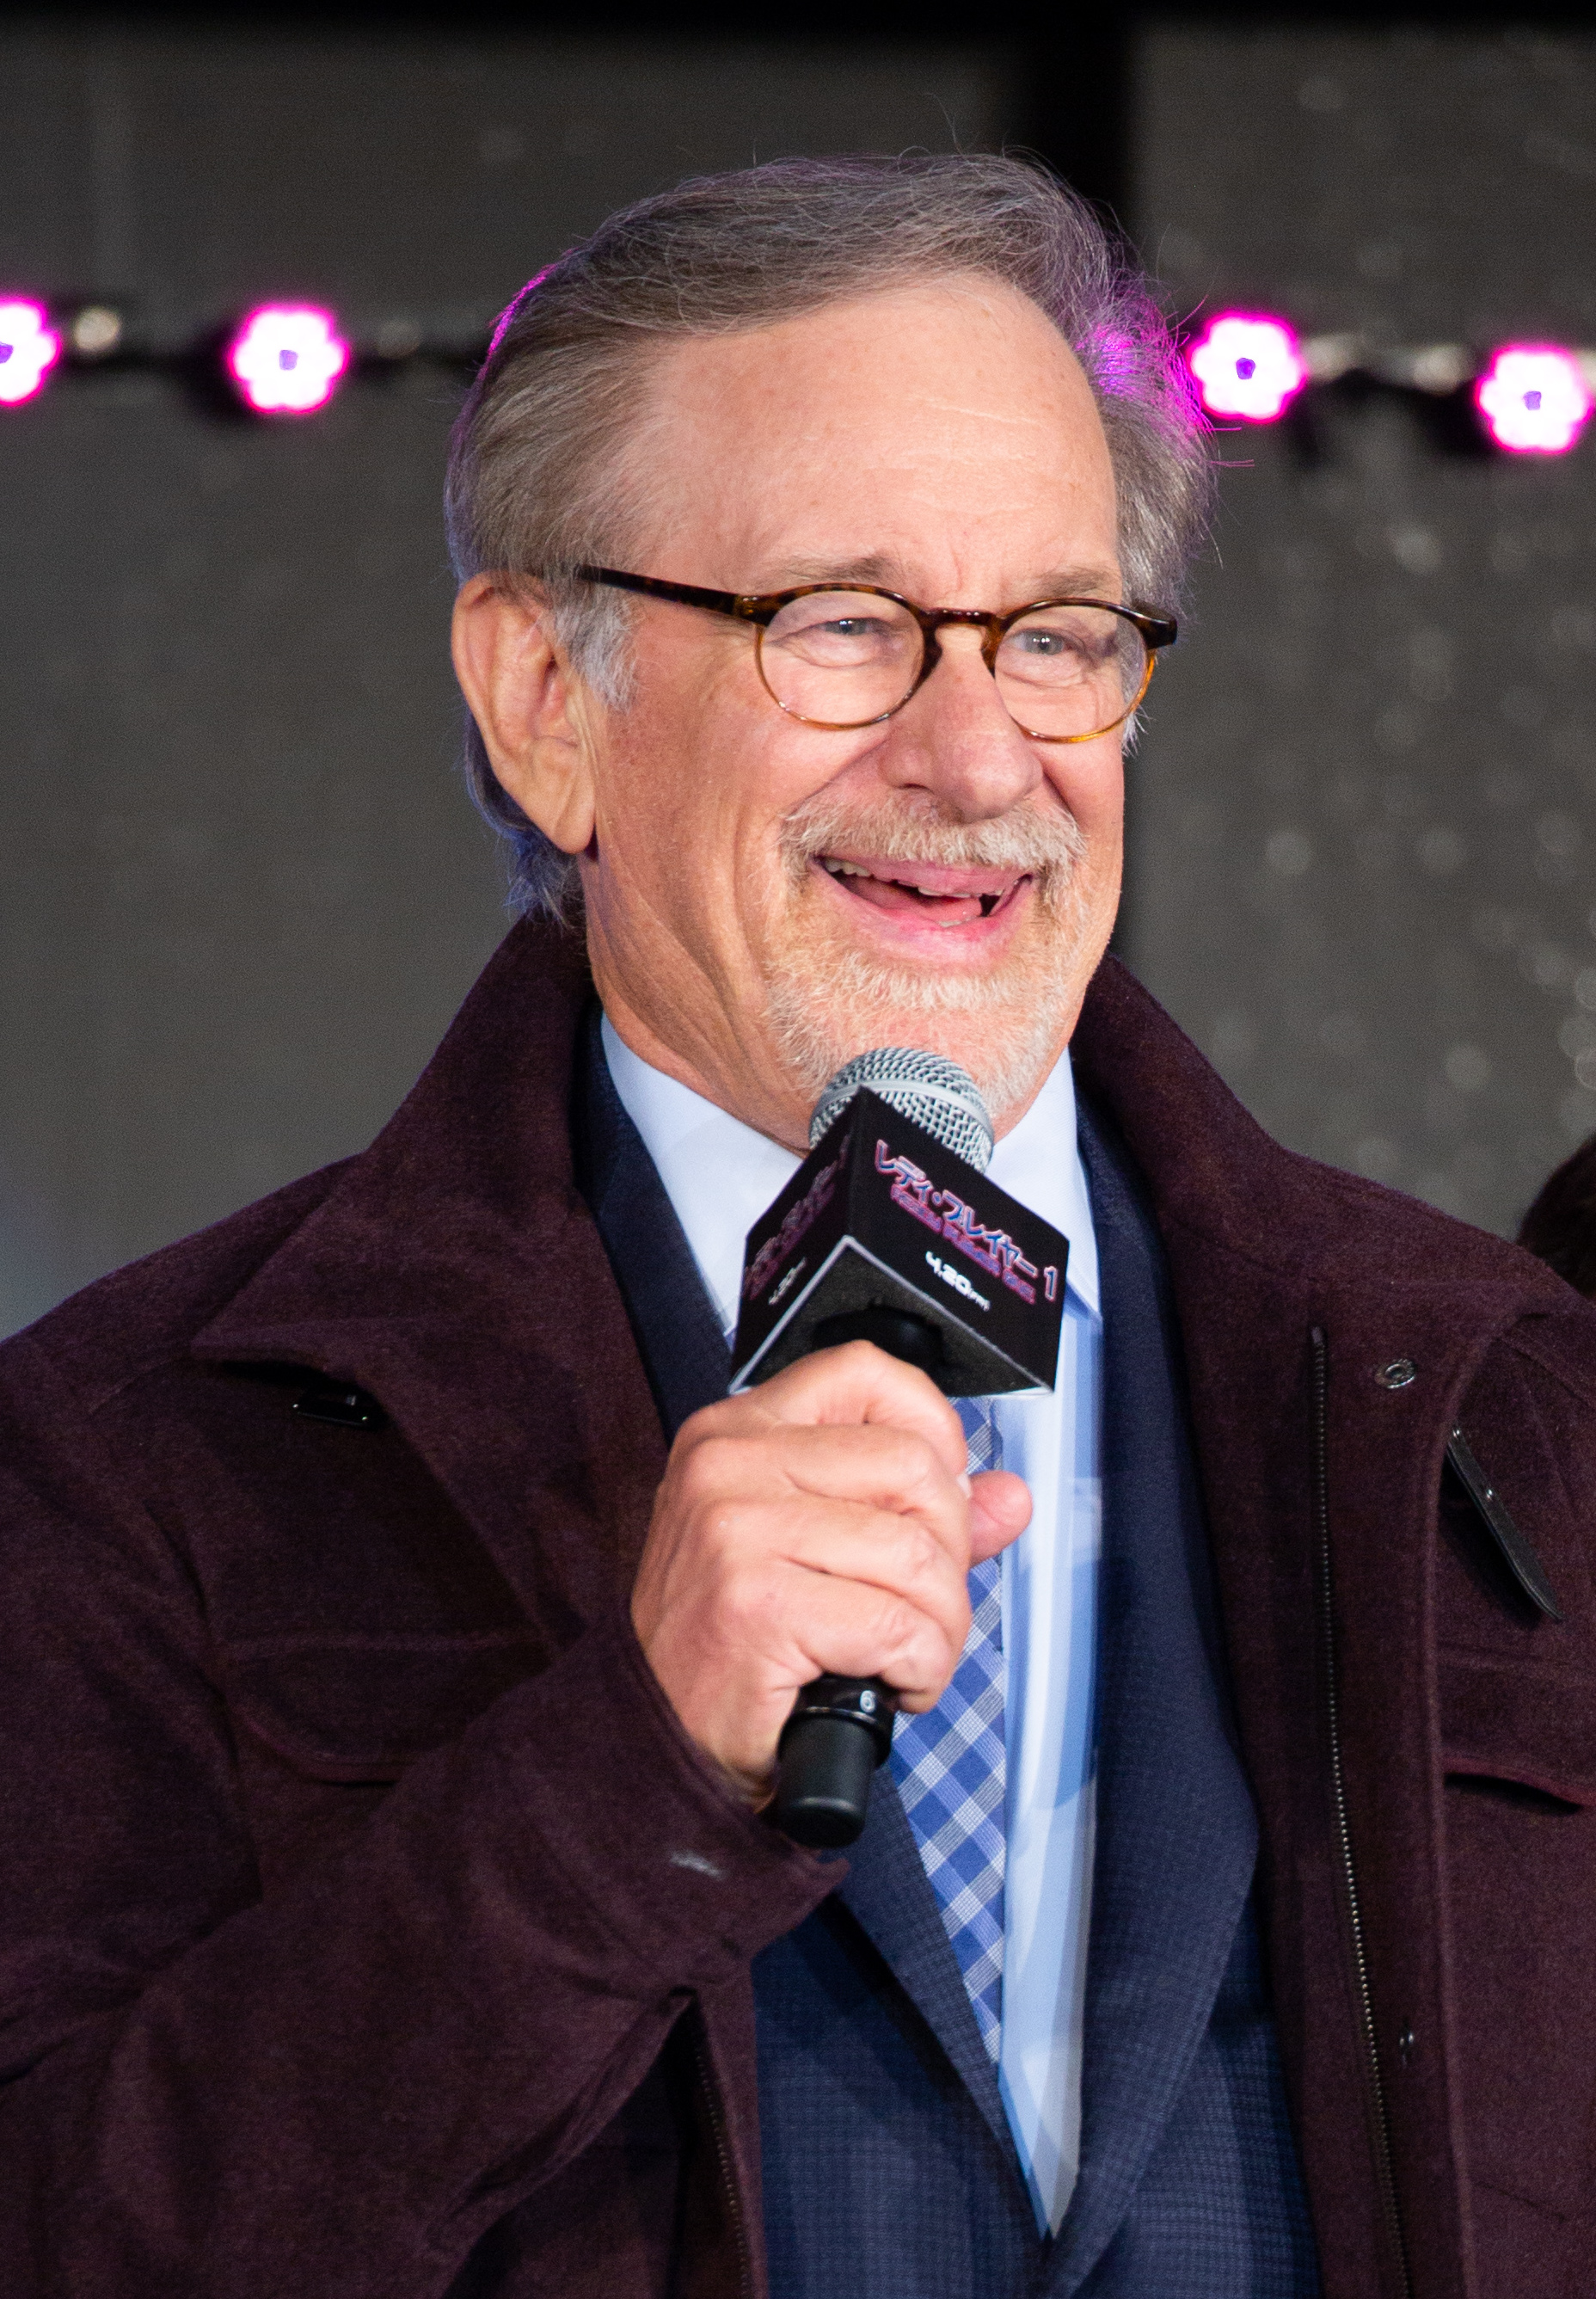  Steven Spielberg, biografía: historia, vida, películas y trayectoria